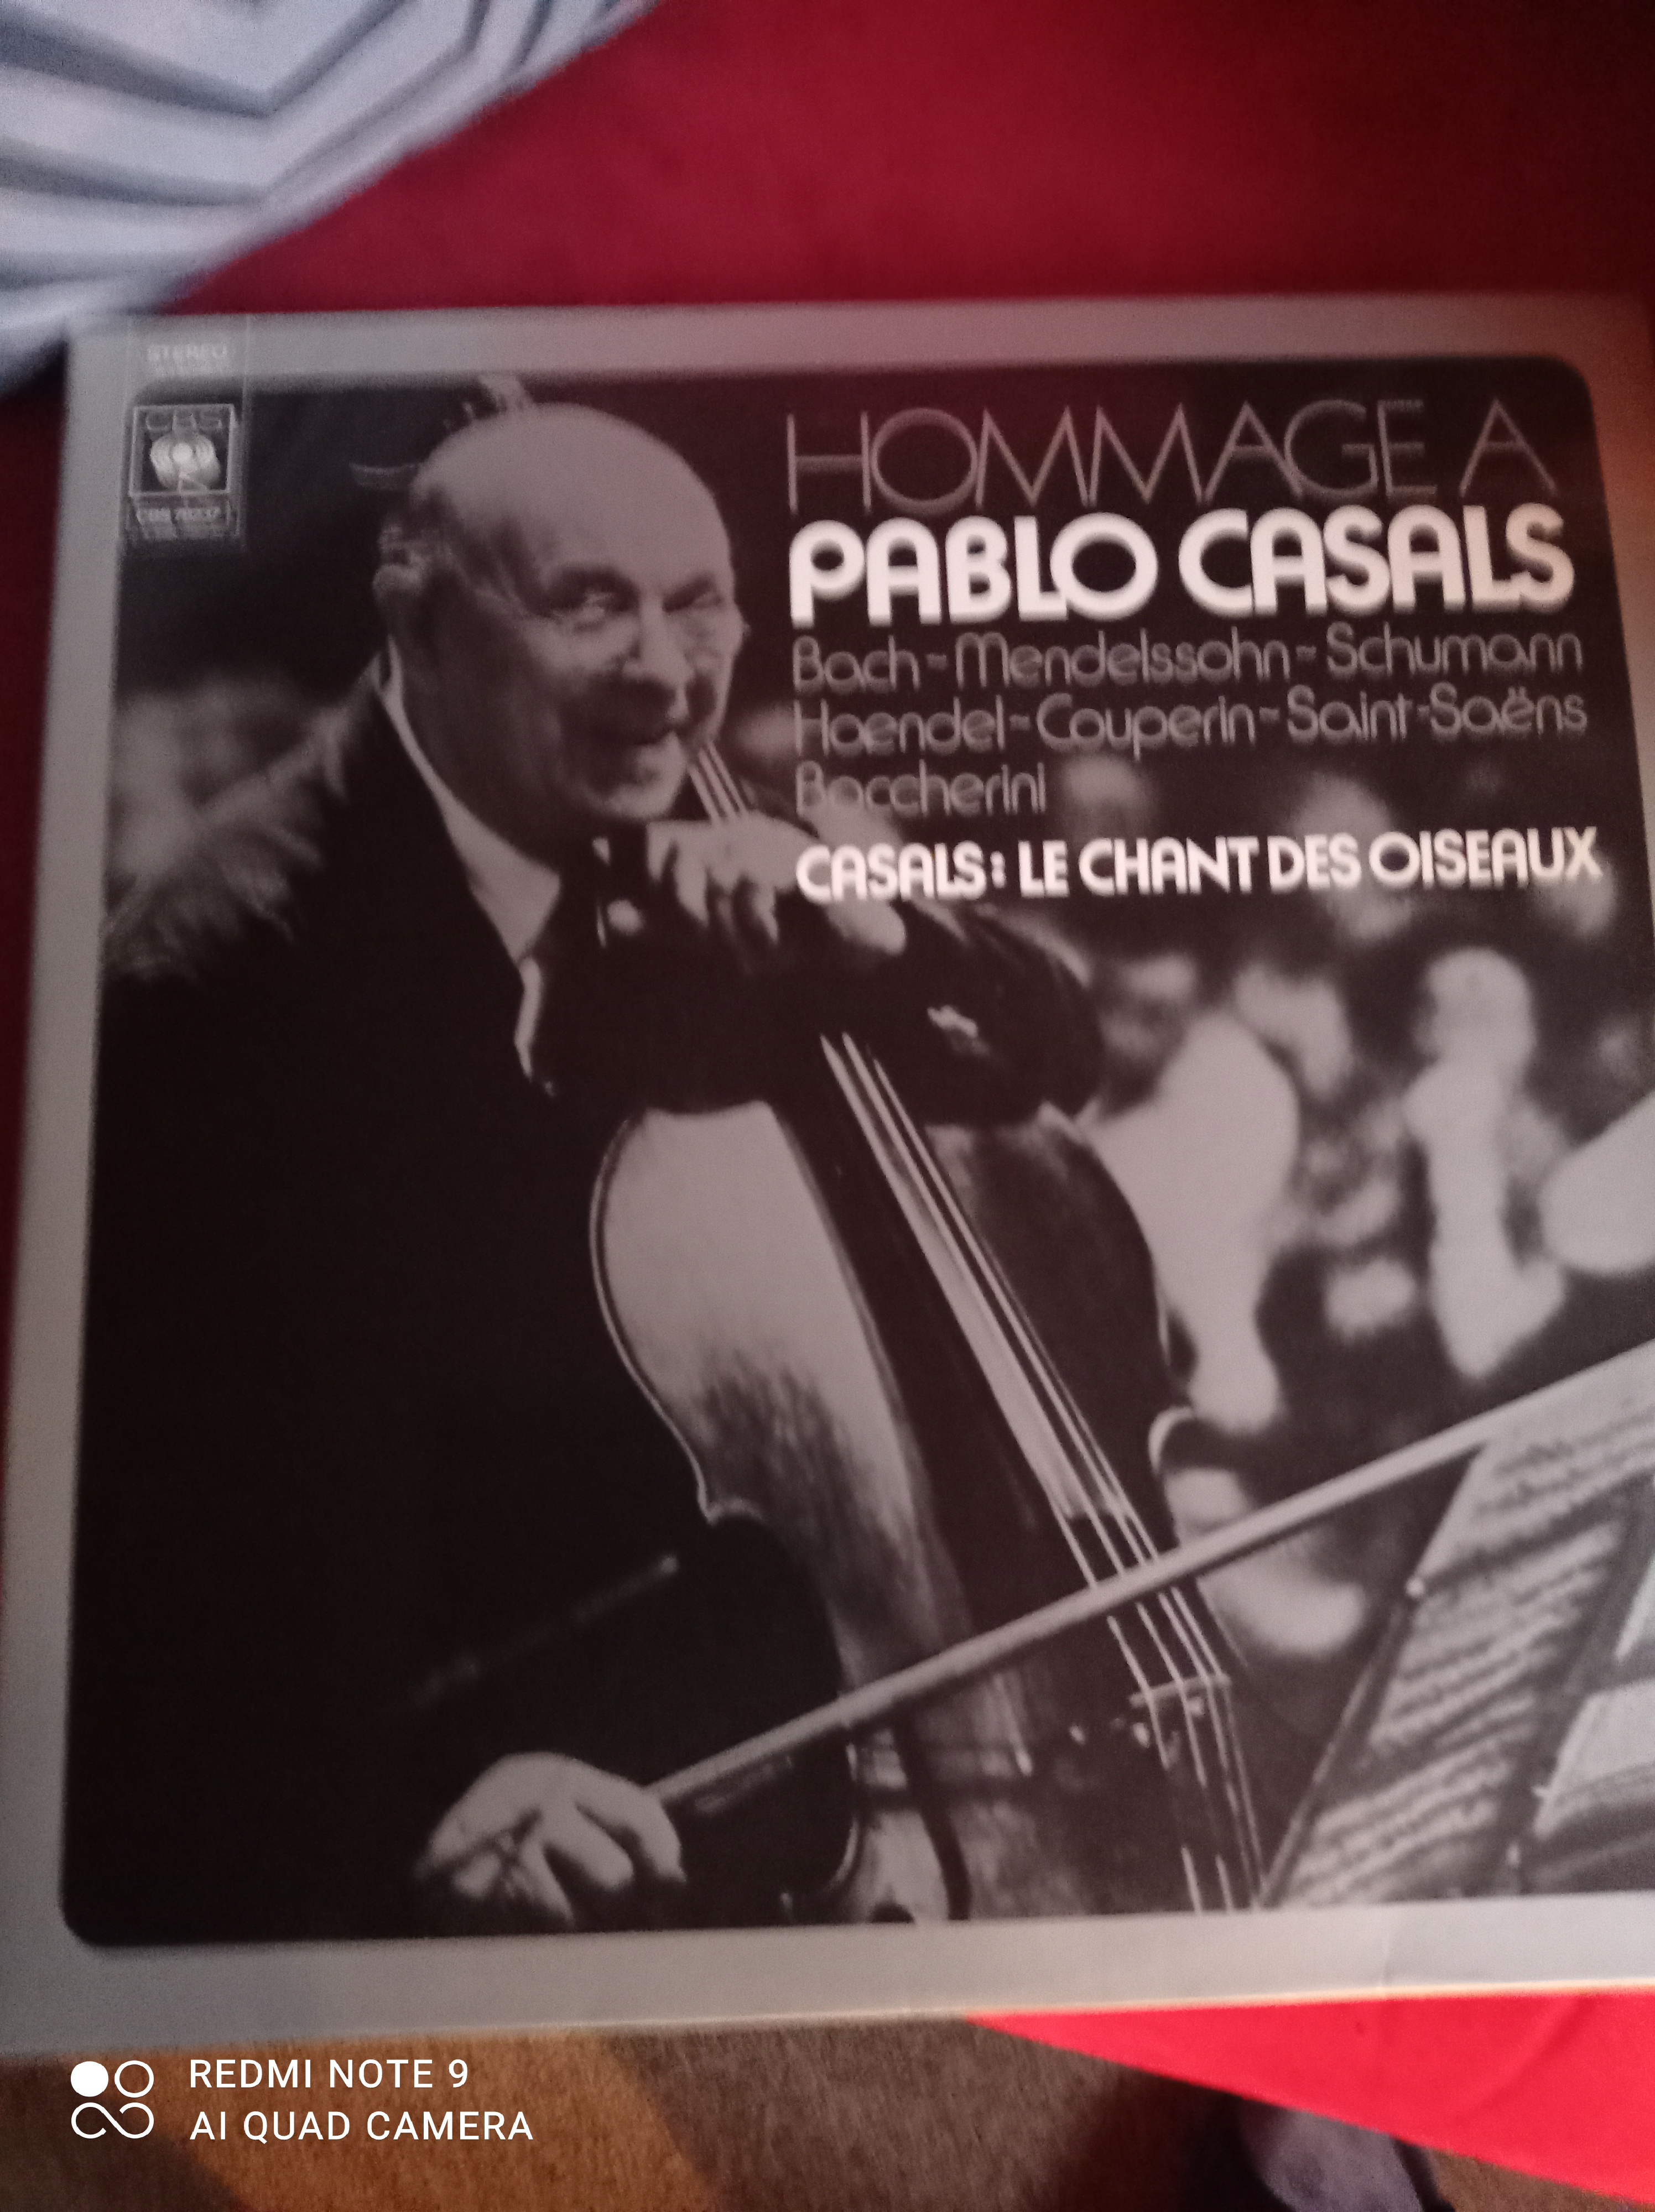 Acheter disque vinyle Pablo Casals Coffret hommage à Pablo Casals (Bach-Mendelssohn-Schumann-Haendel-) Casals le chant des oiseaux a vendre